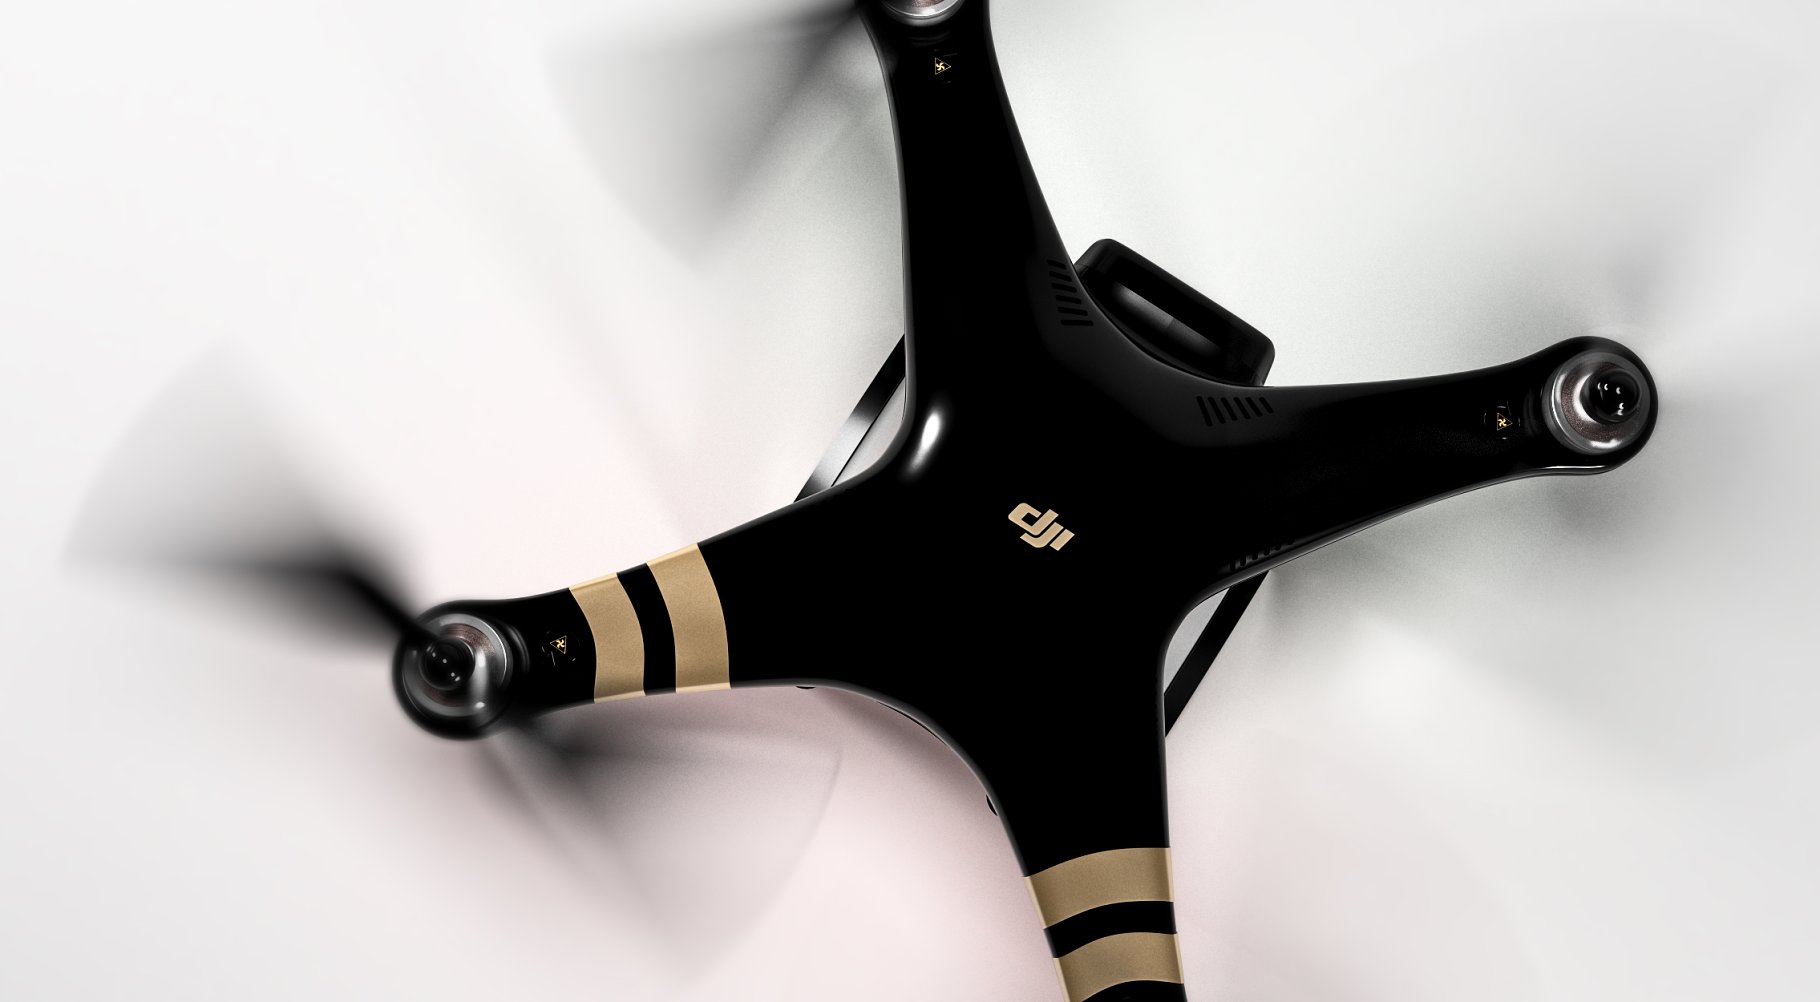 Wonderful rendering of a black DJI Phantom 3 drone